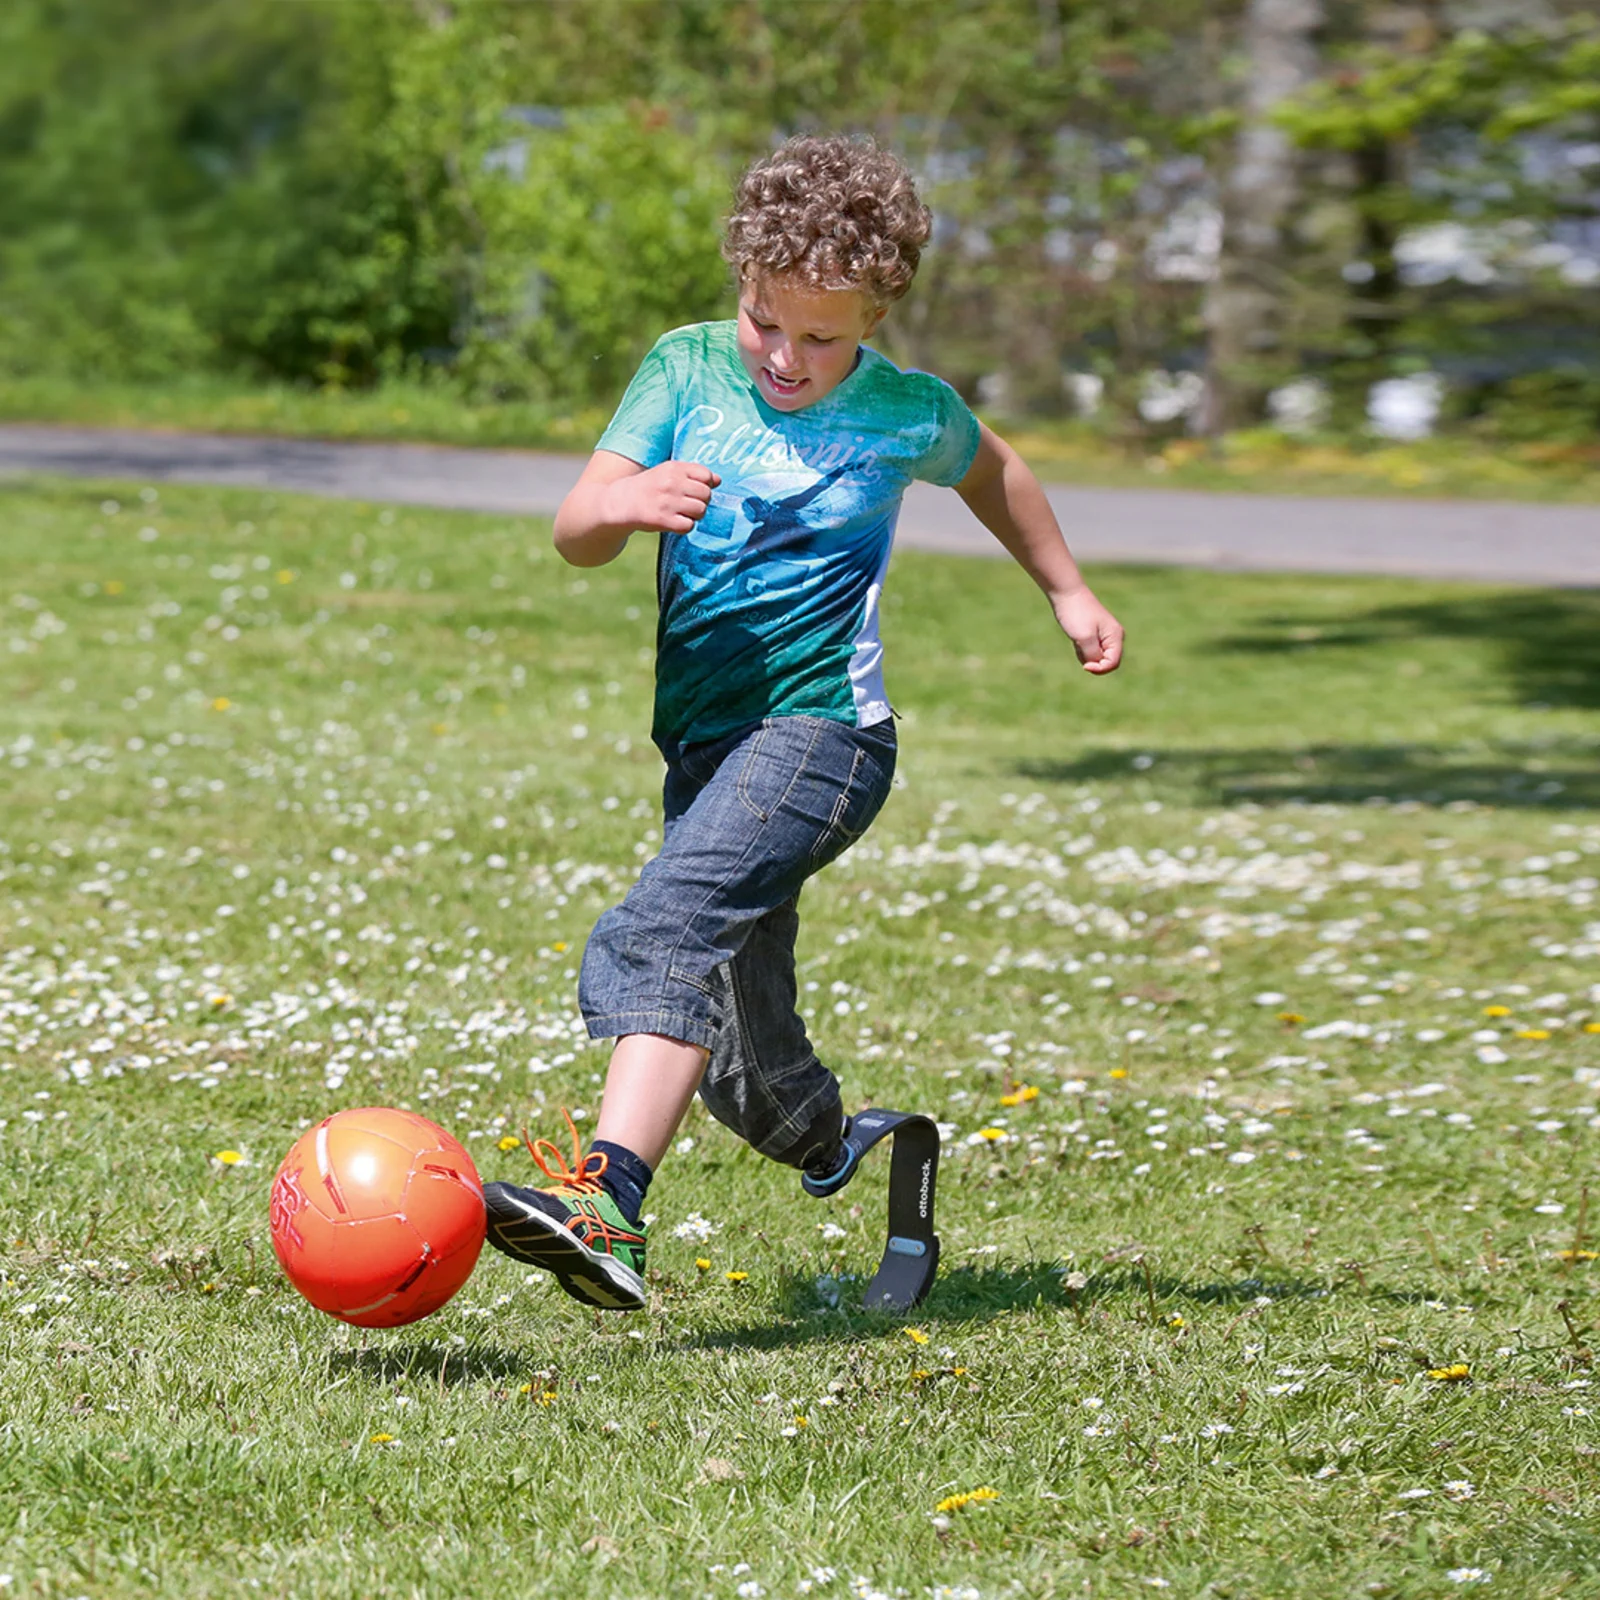 Un bambino con una protesi sportiva gioca a calcio in giardino.